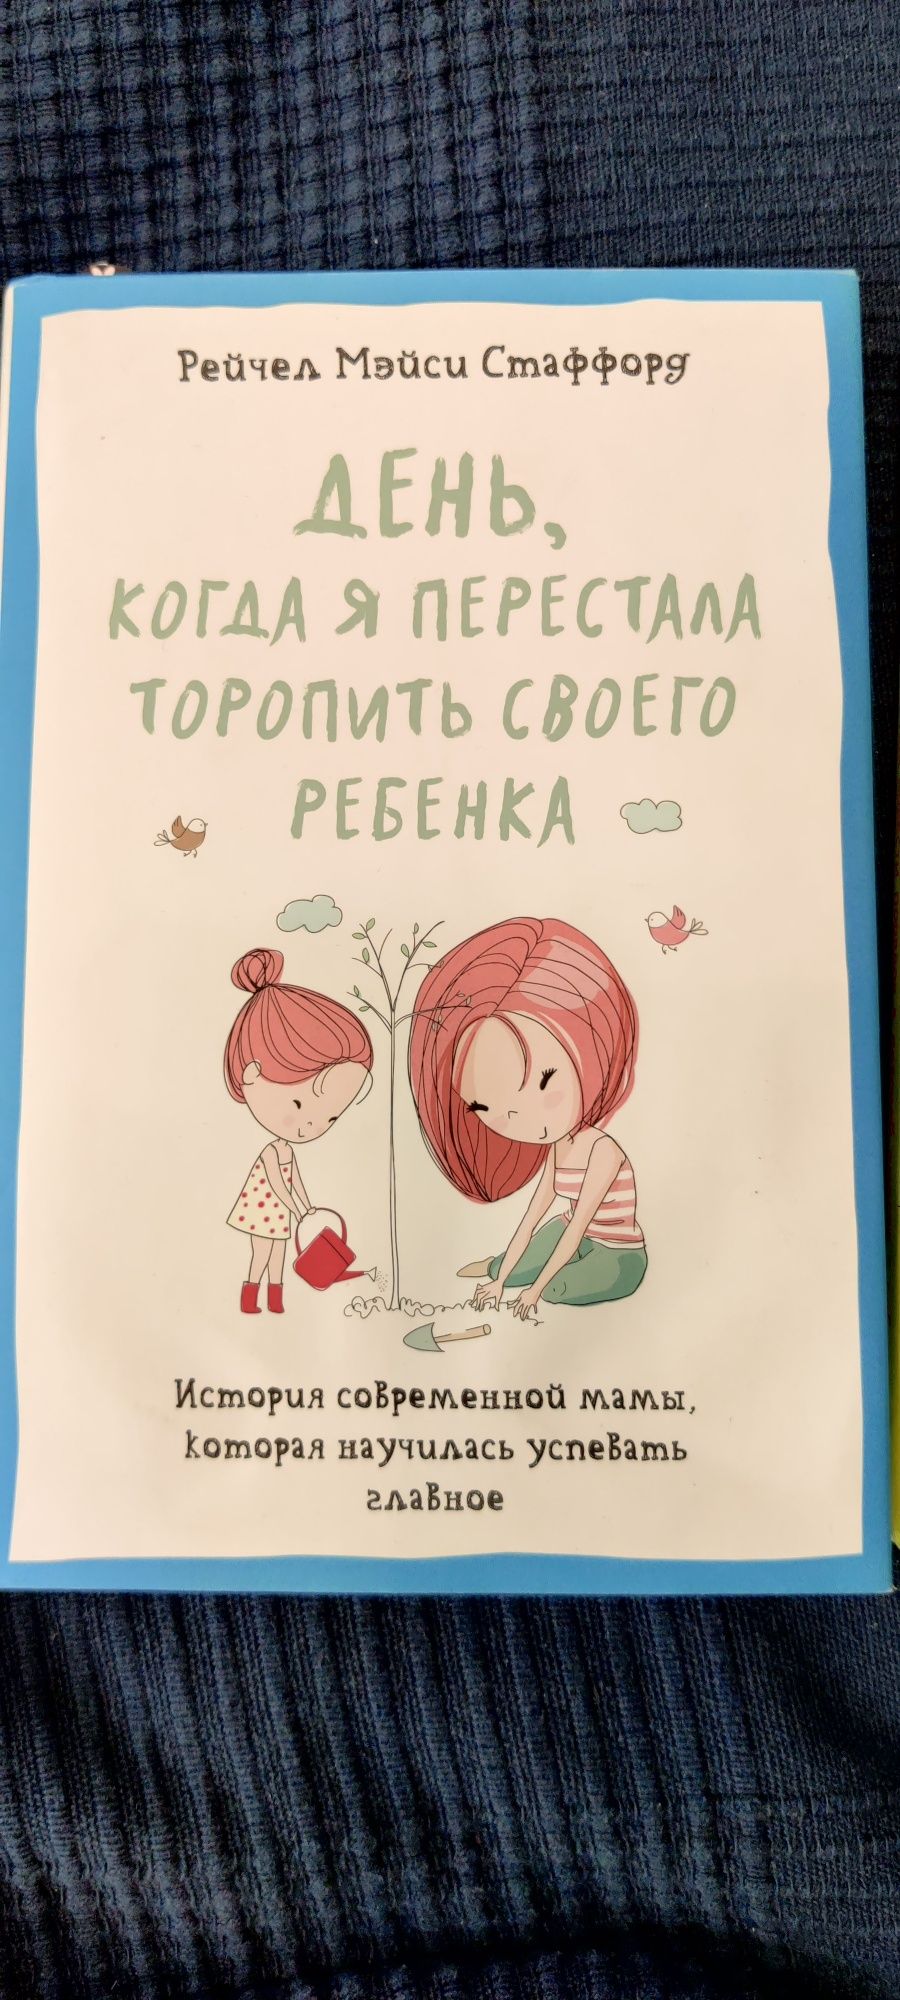 Книги для детского развития